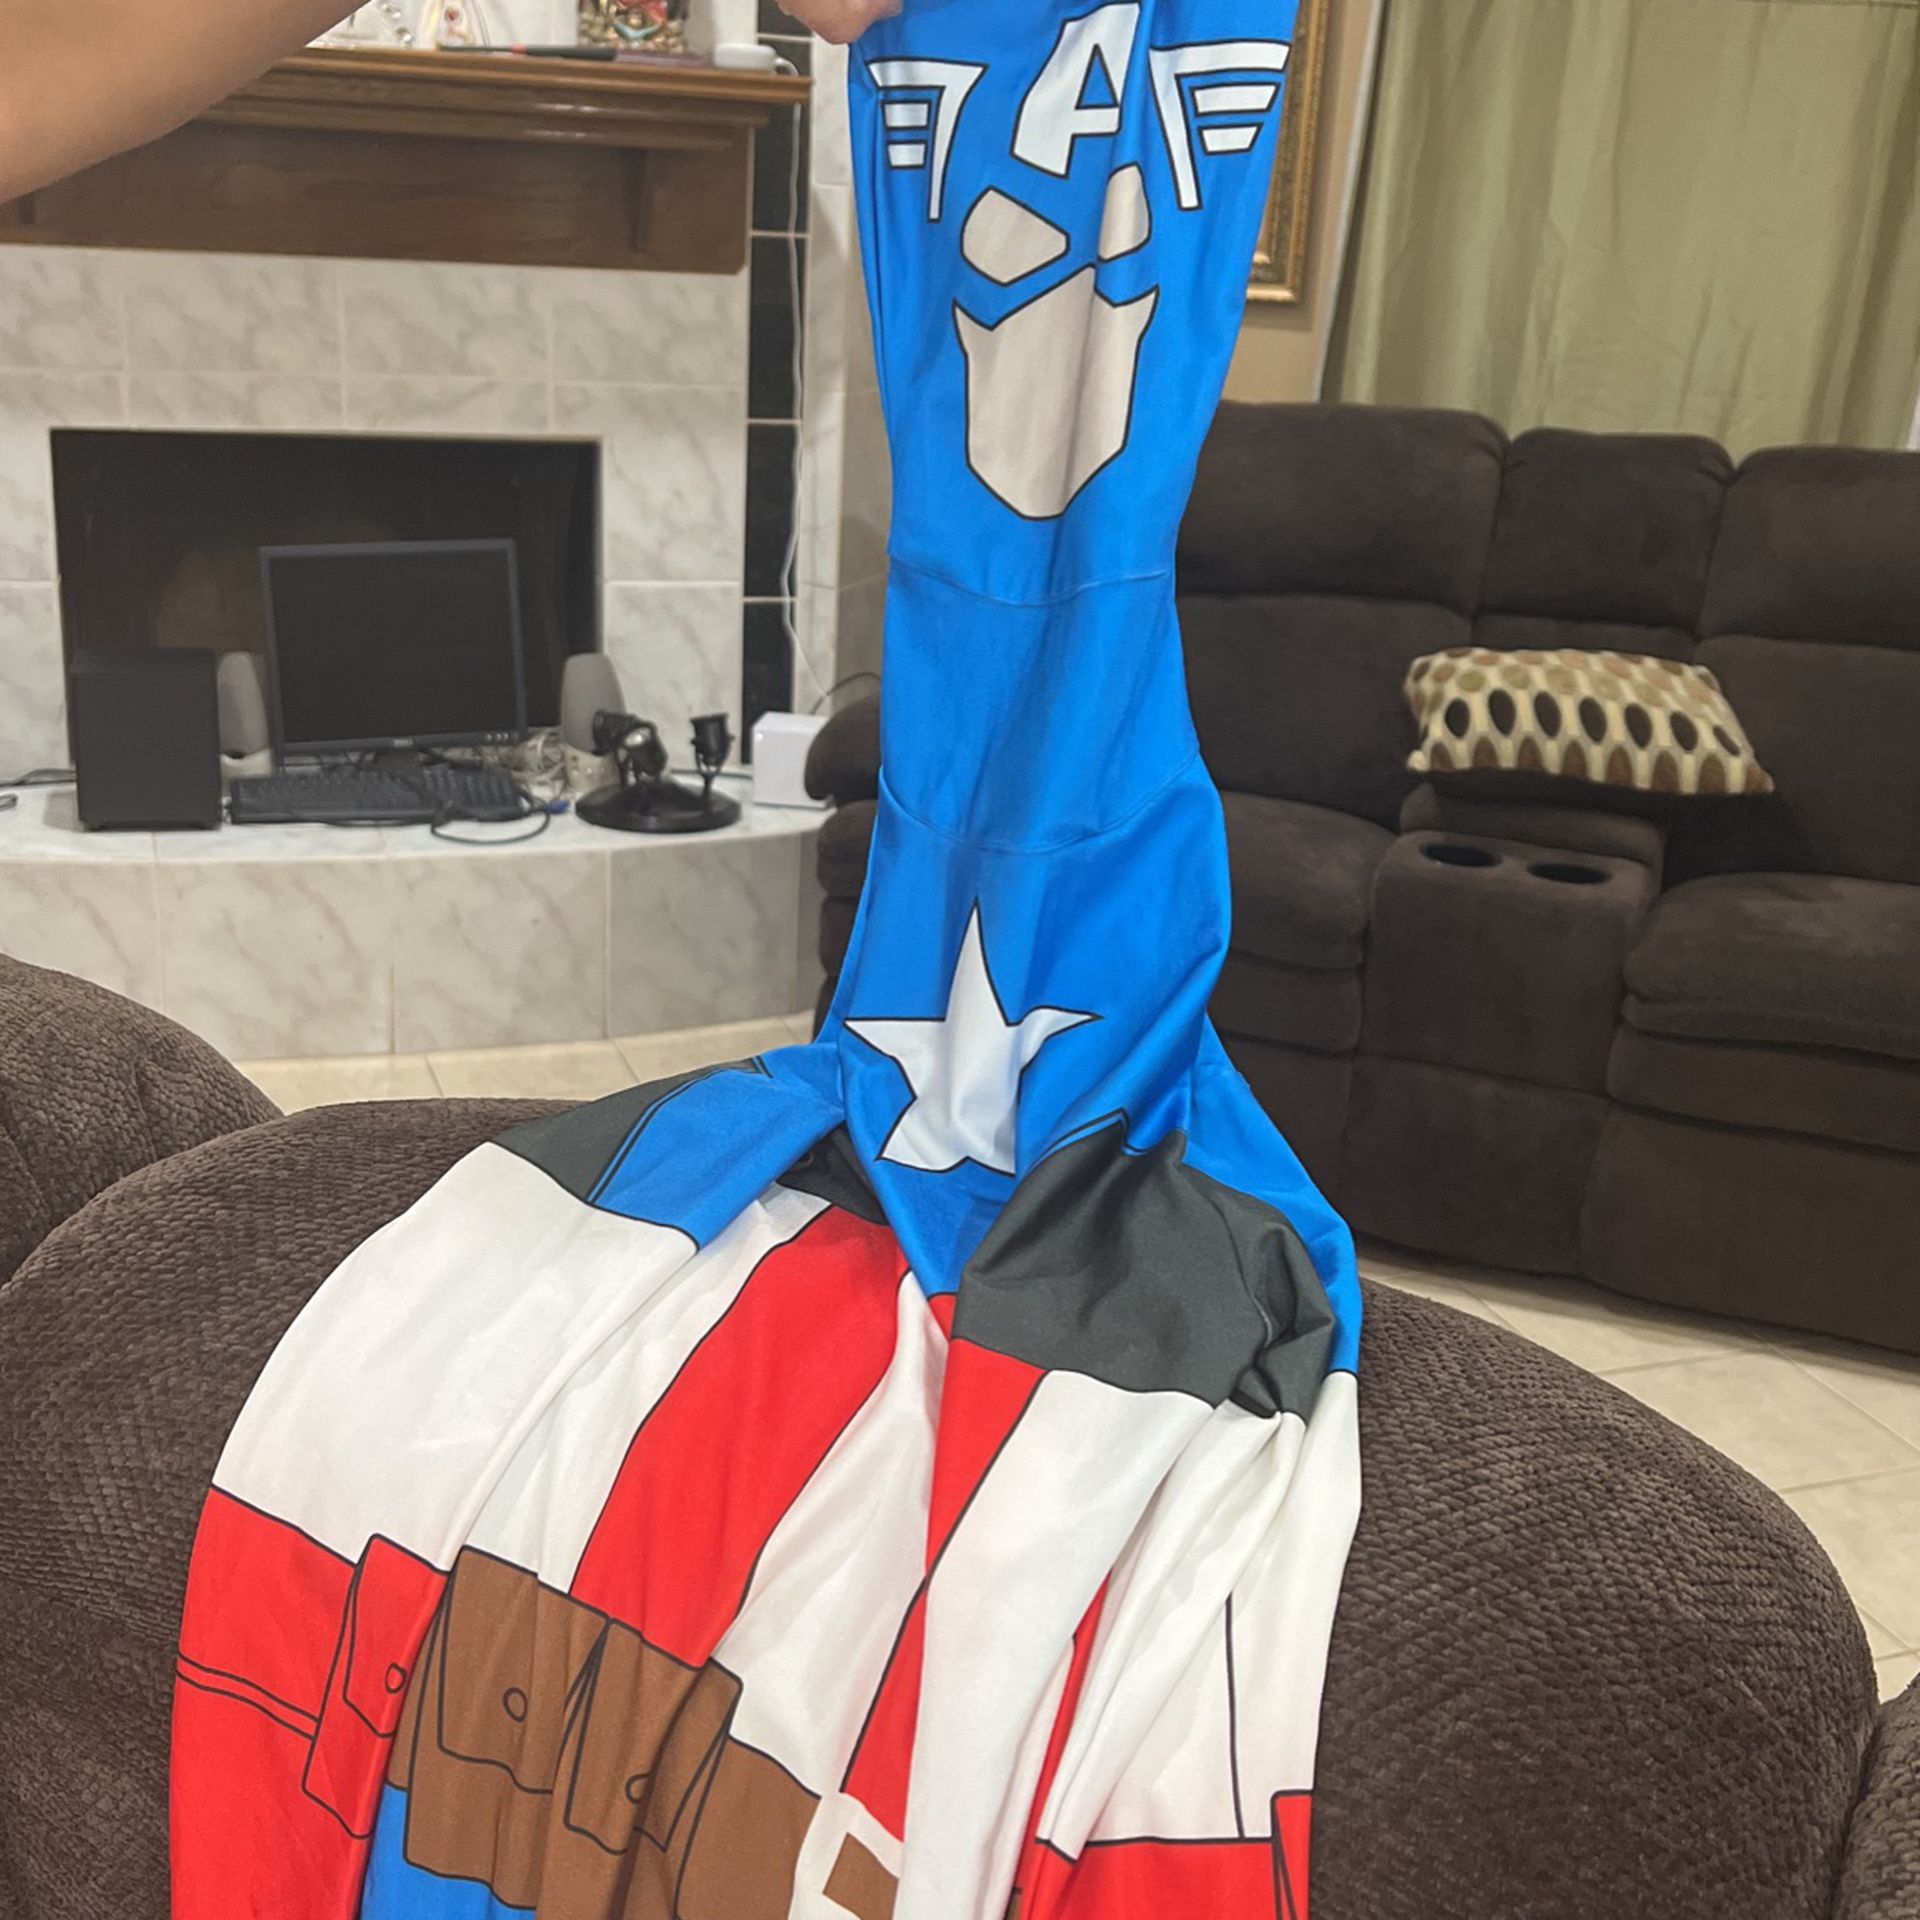  Captain America costume 